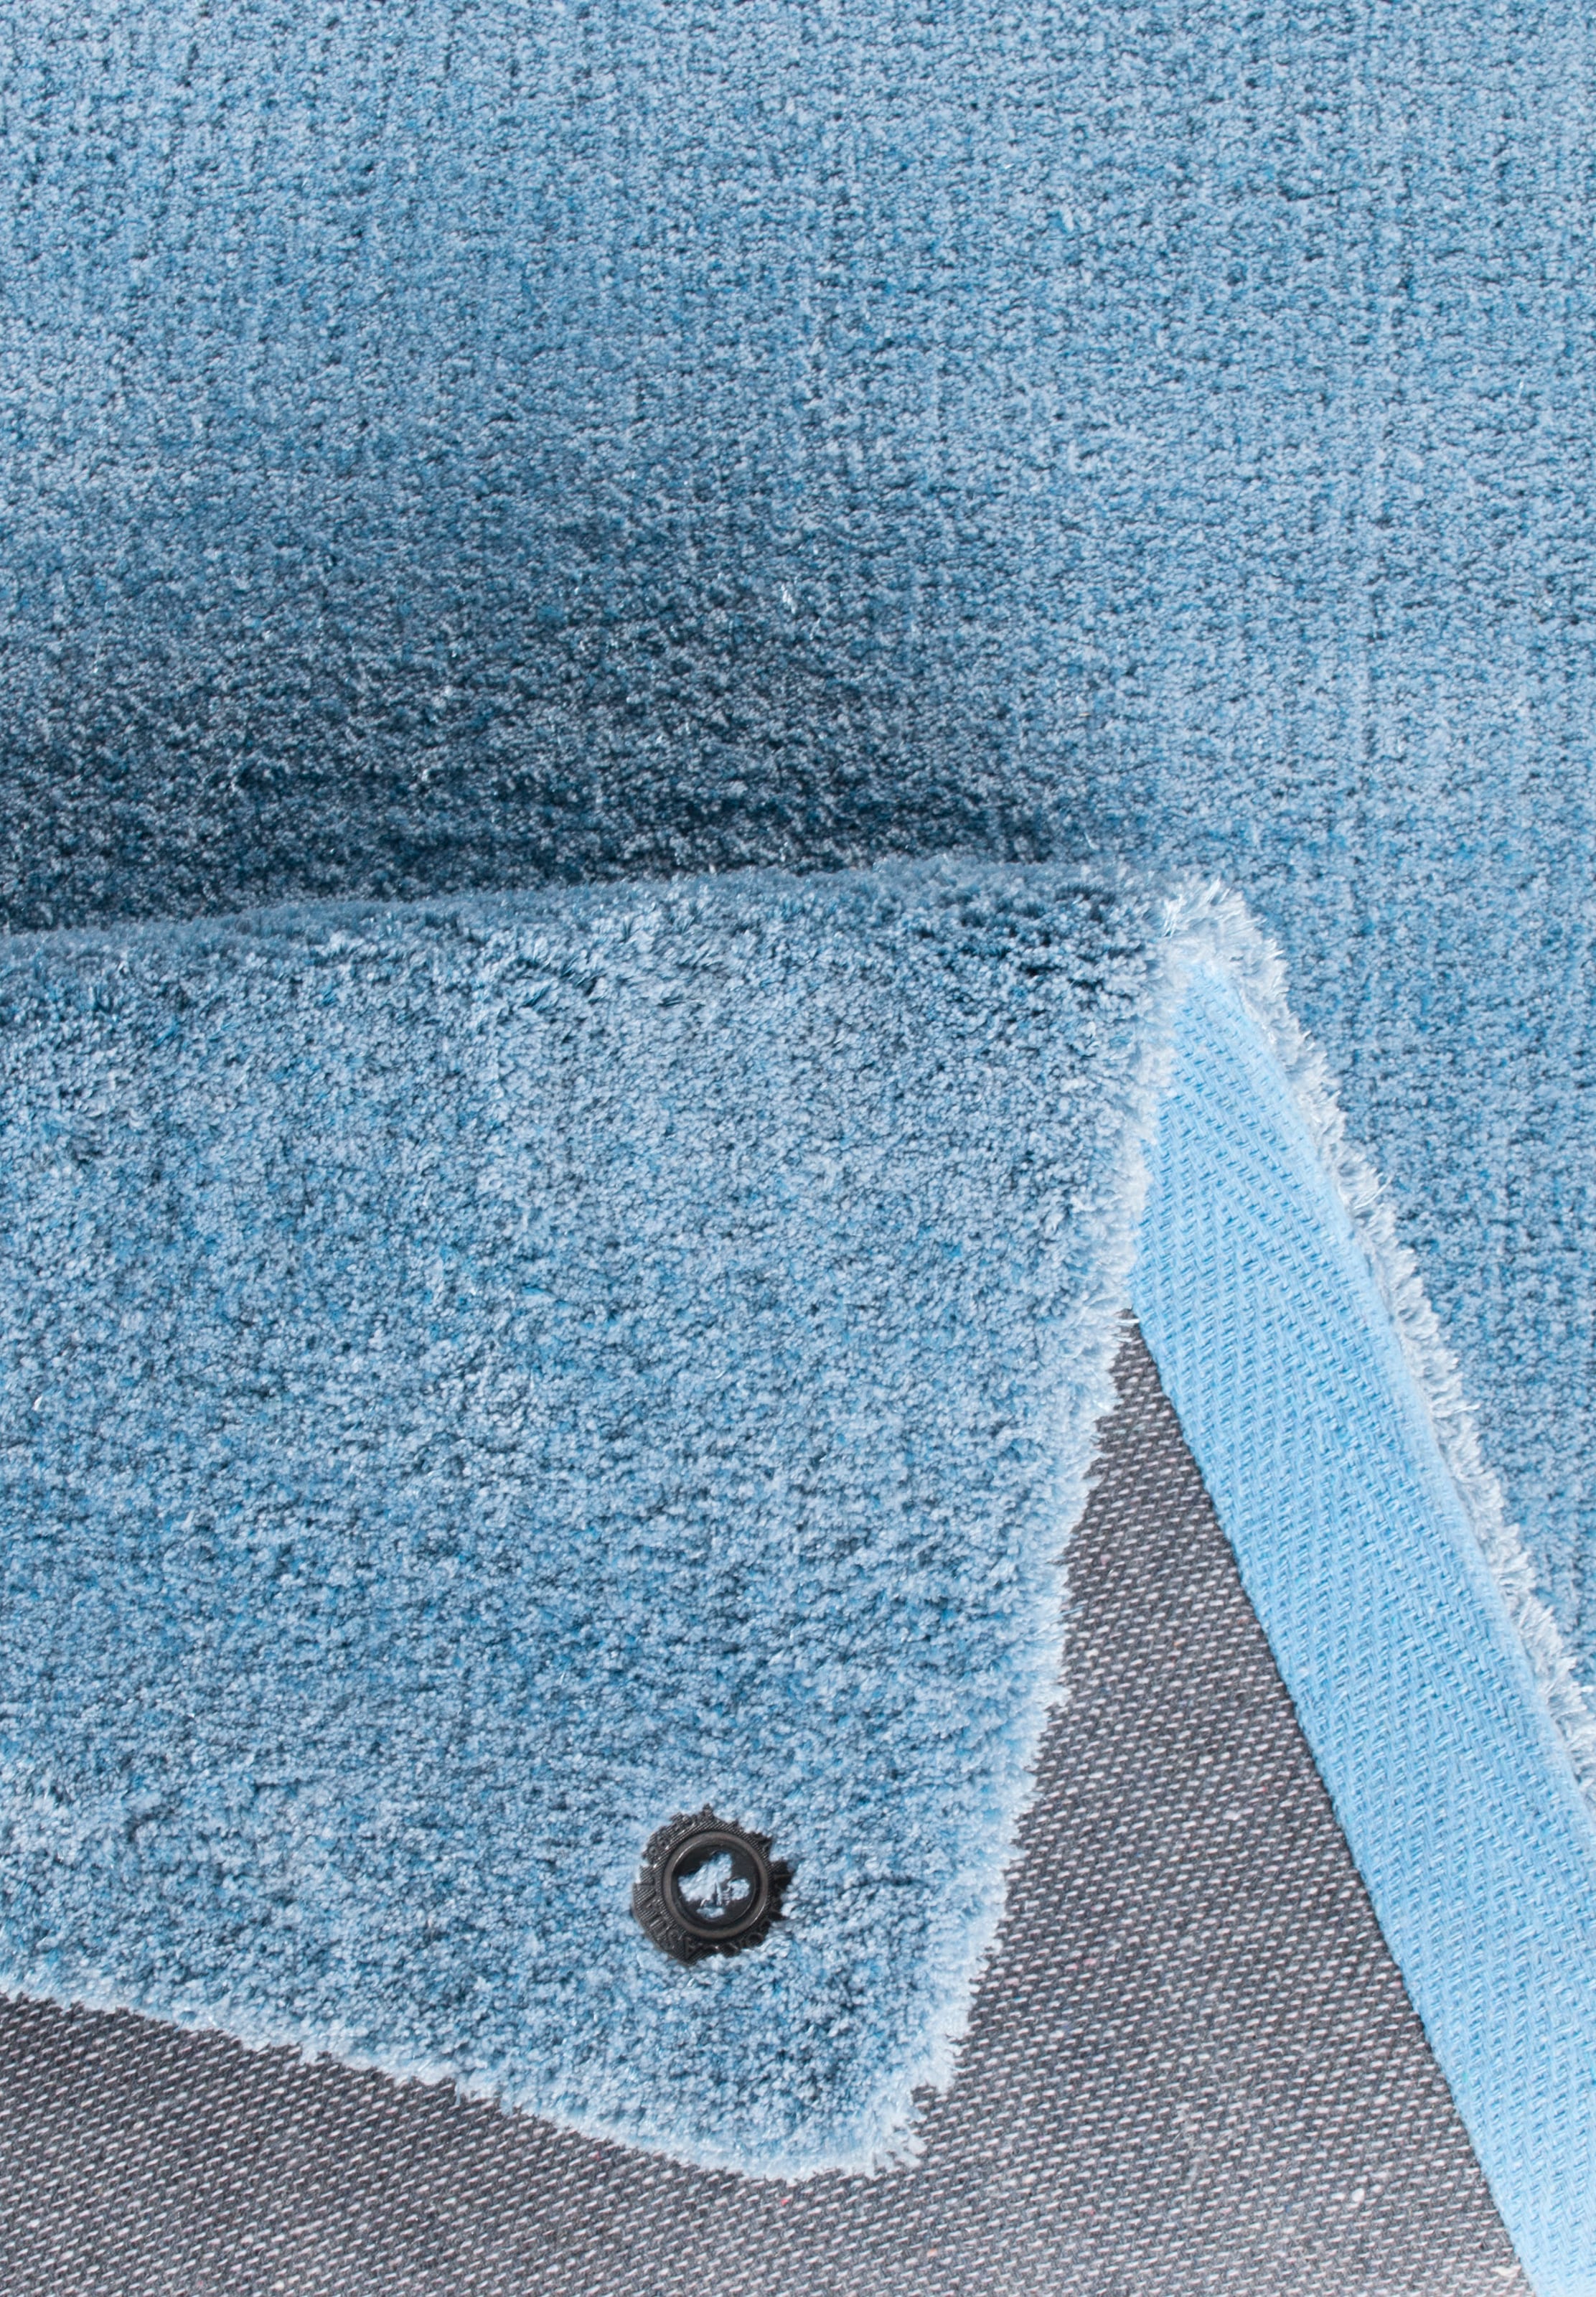 TOM TAILOR HOME Teppich »Powder uni«, rechteckig, Uni-Farben, besonders weich und flauschig